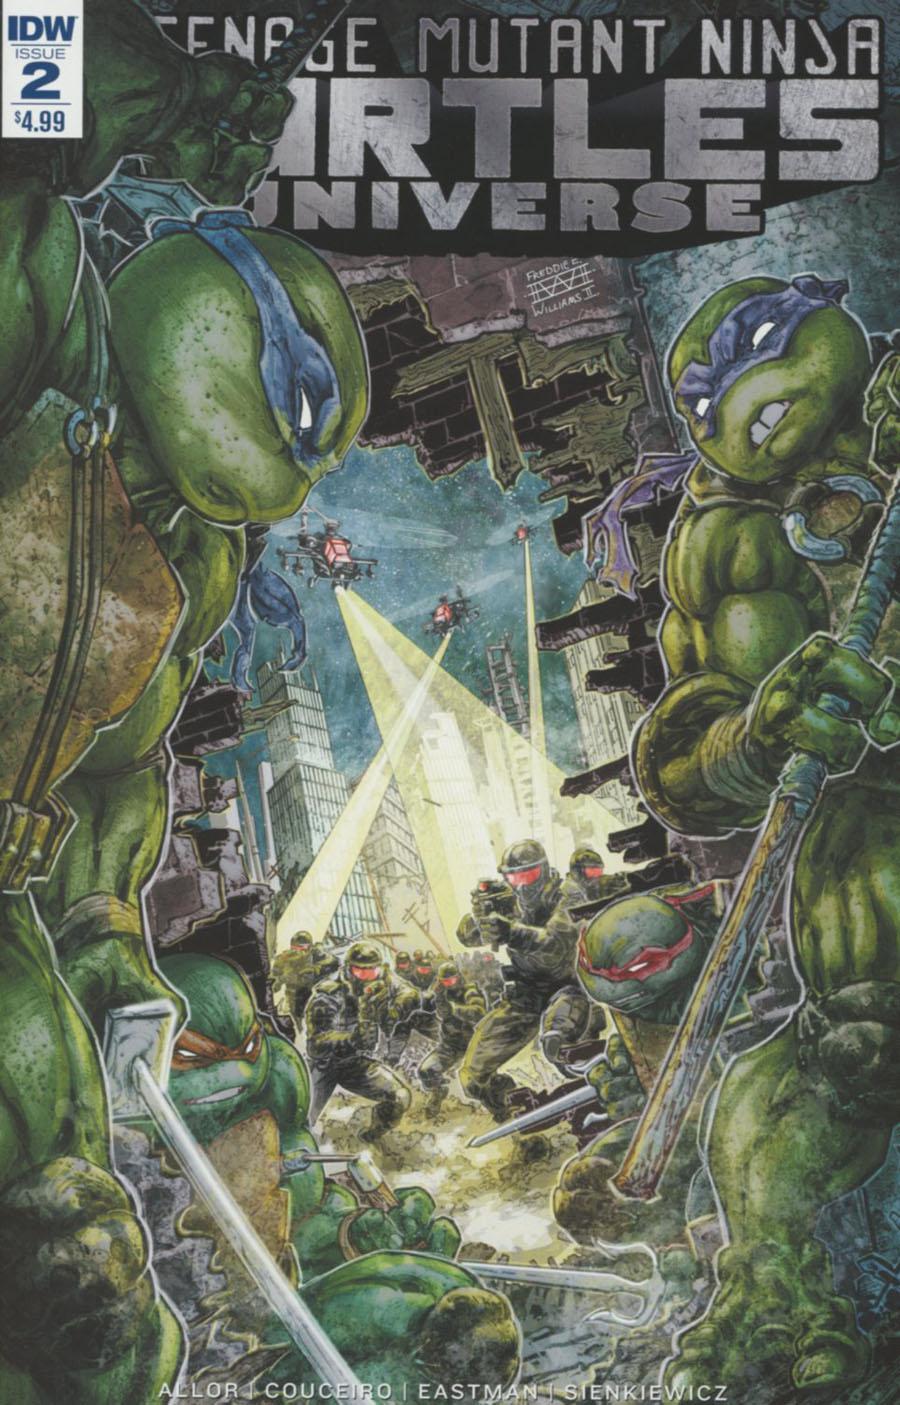 Teenage Mutant Ninja Turtles Universe Vol. 1 #2